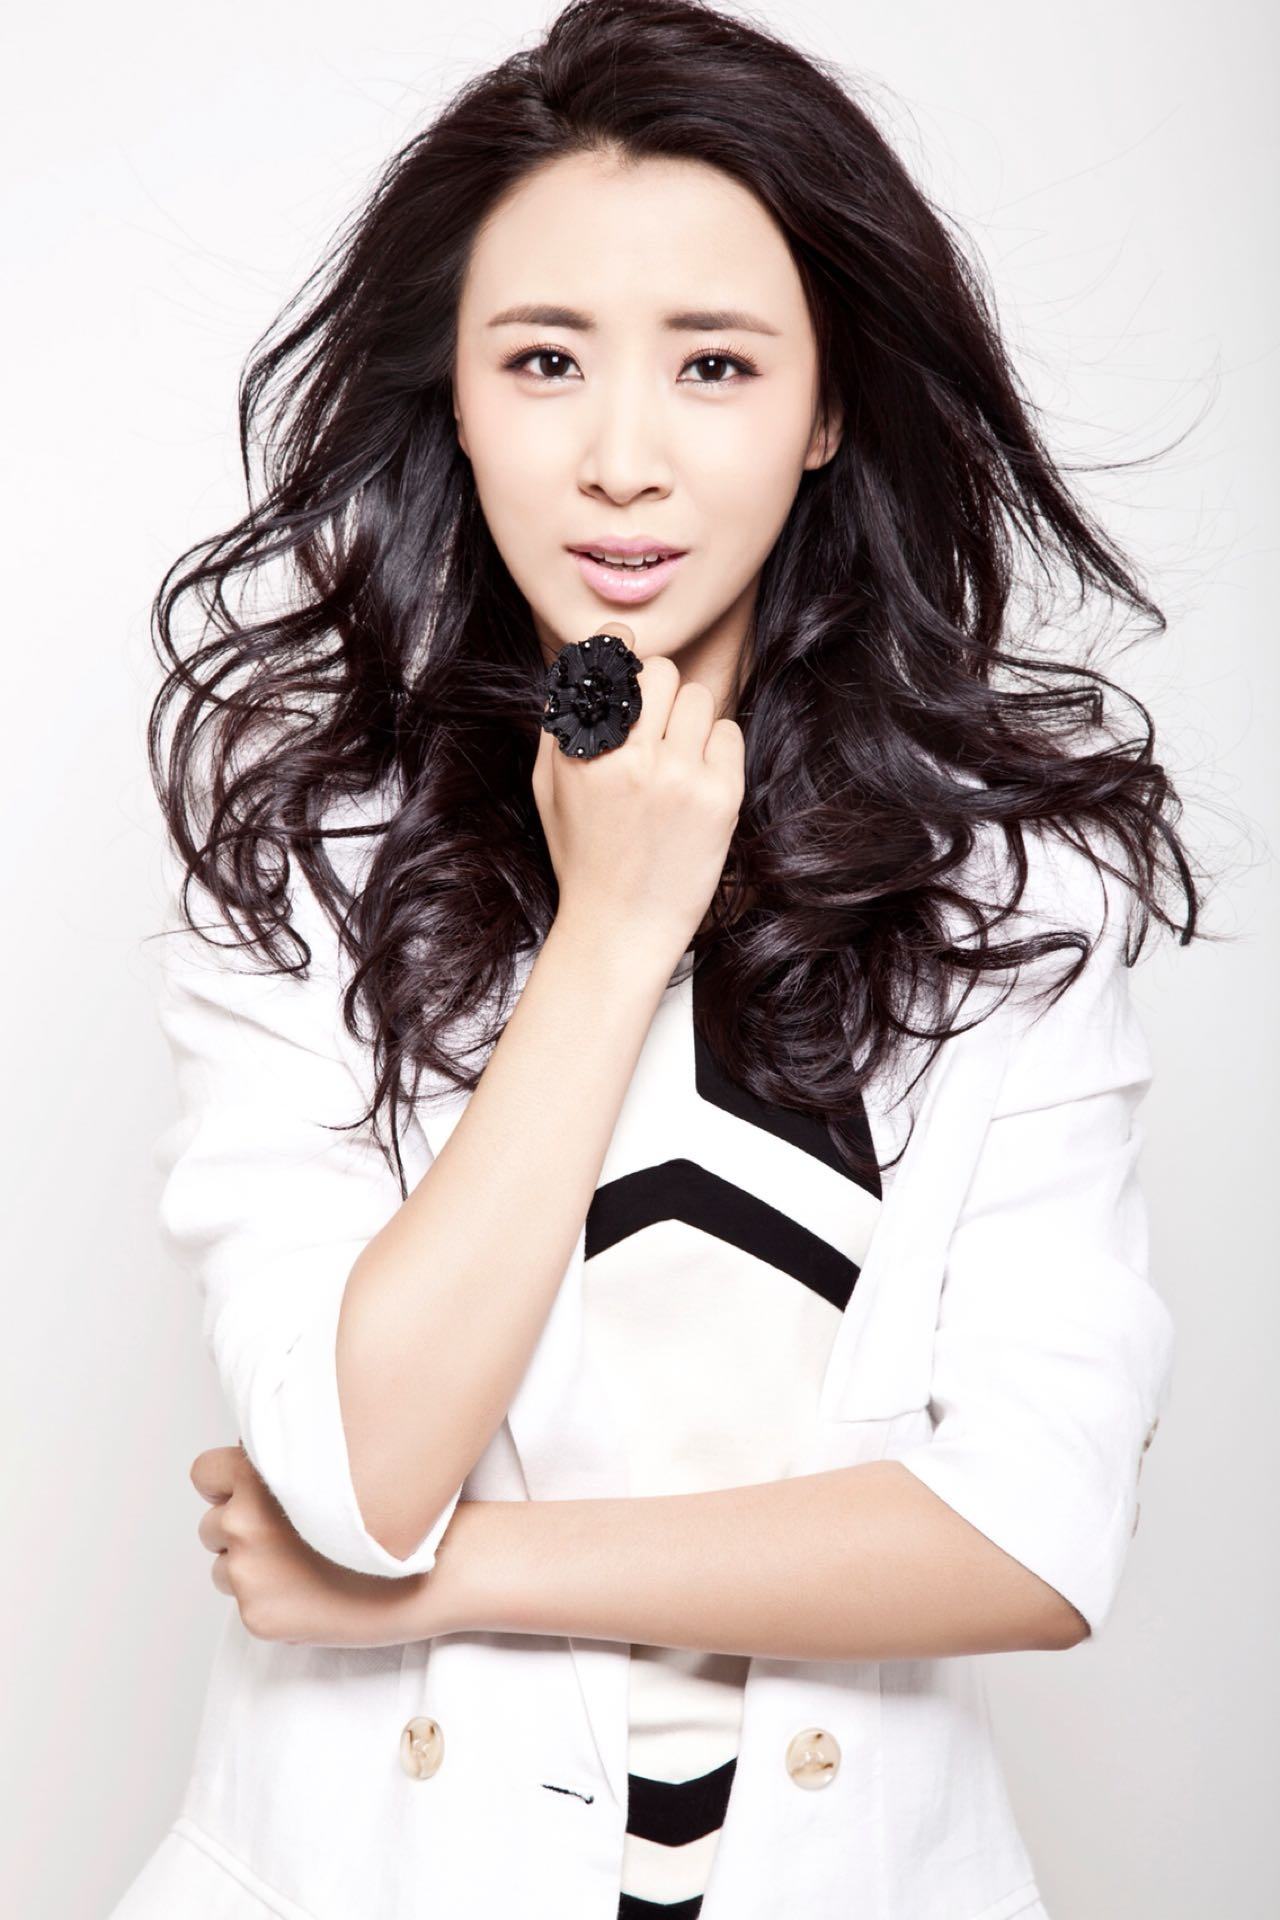 明星李悦溪,娱乐圈影视演员,被誉为荧幕的中国好媳妇